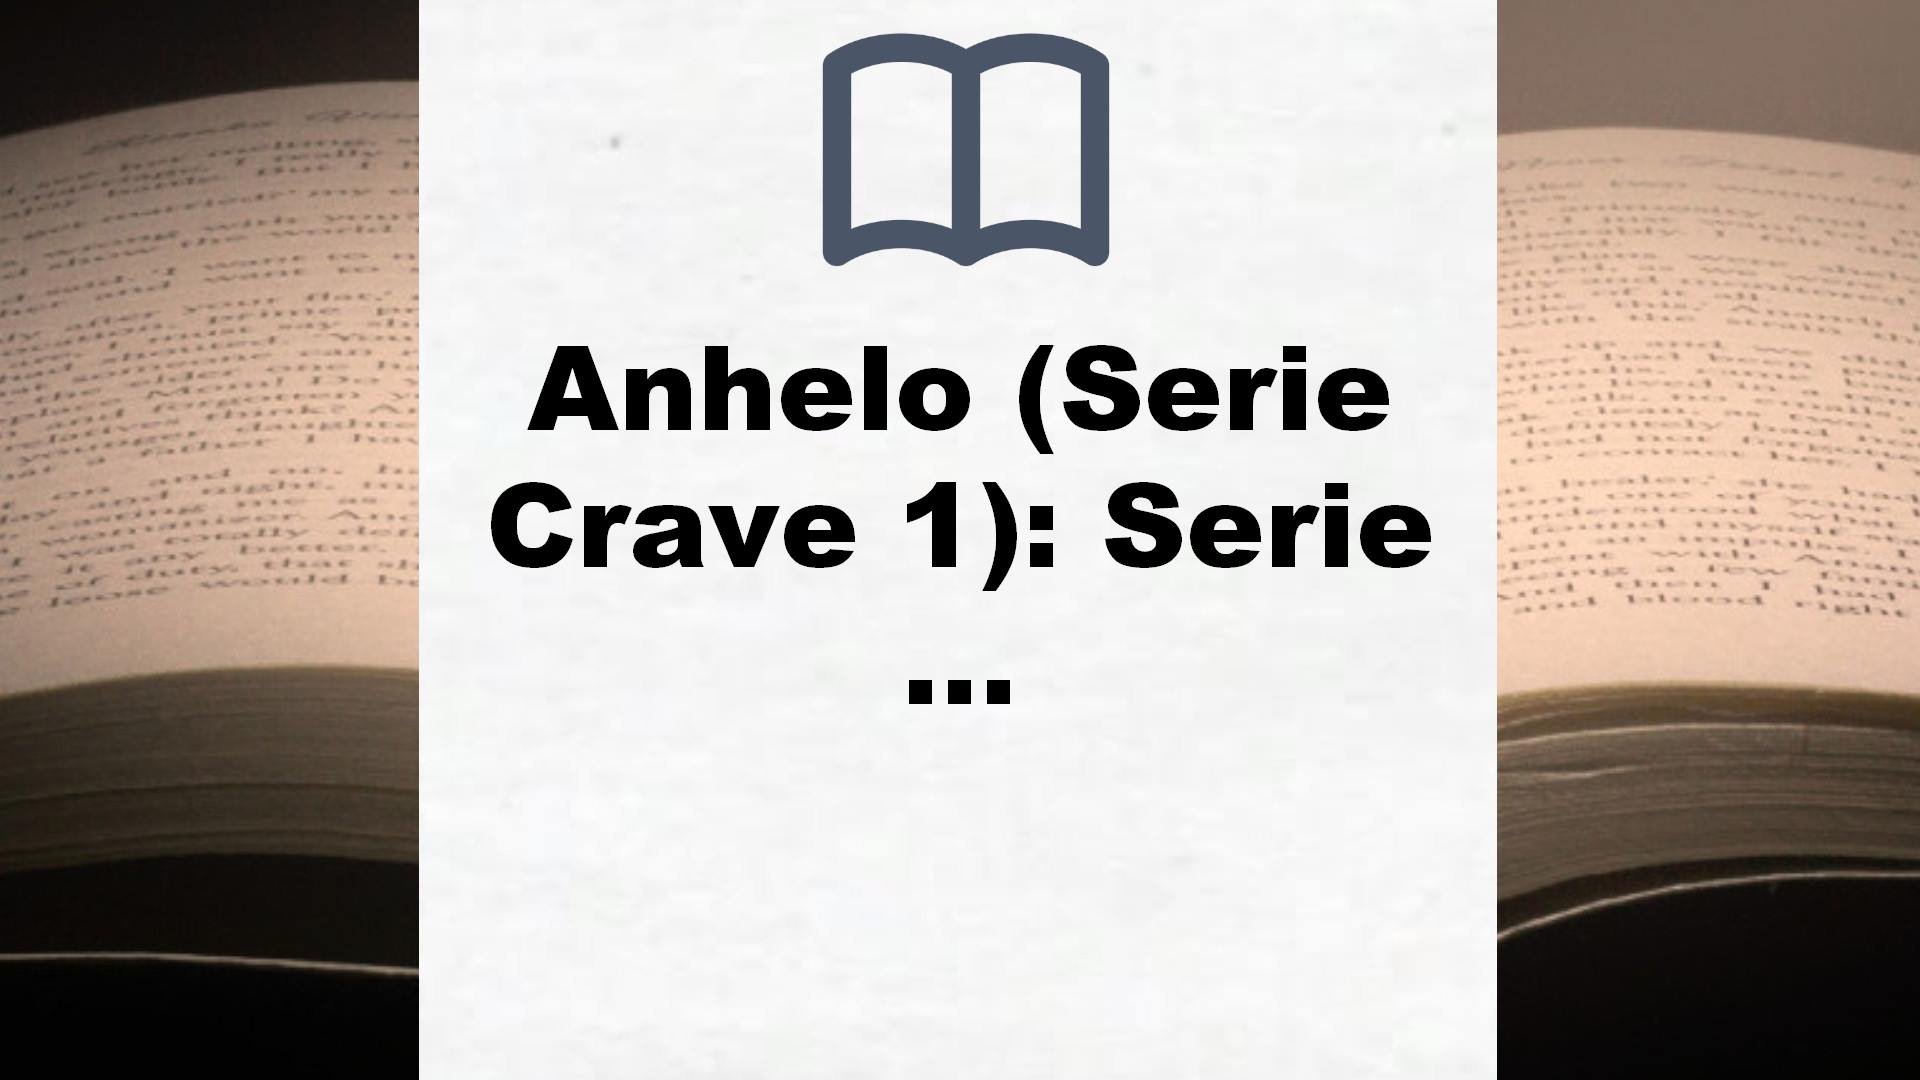 Anhelo (Serie Crave 1): Serie Crave (Planeta Internacional) – Reseña del libro